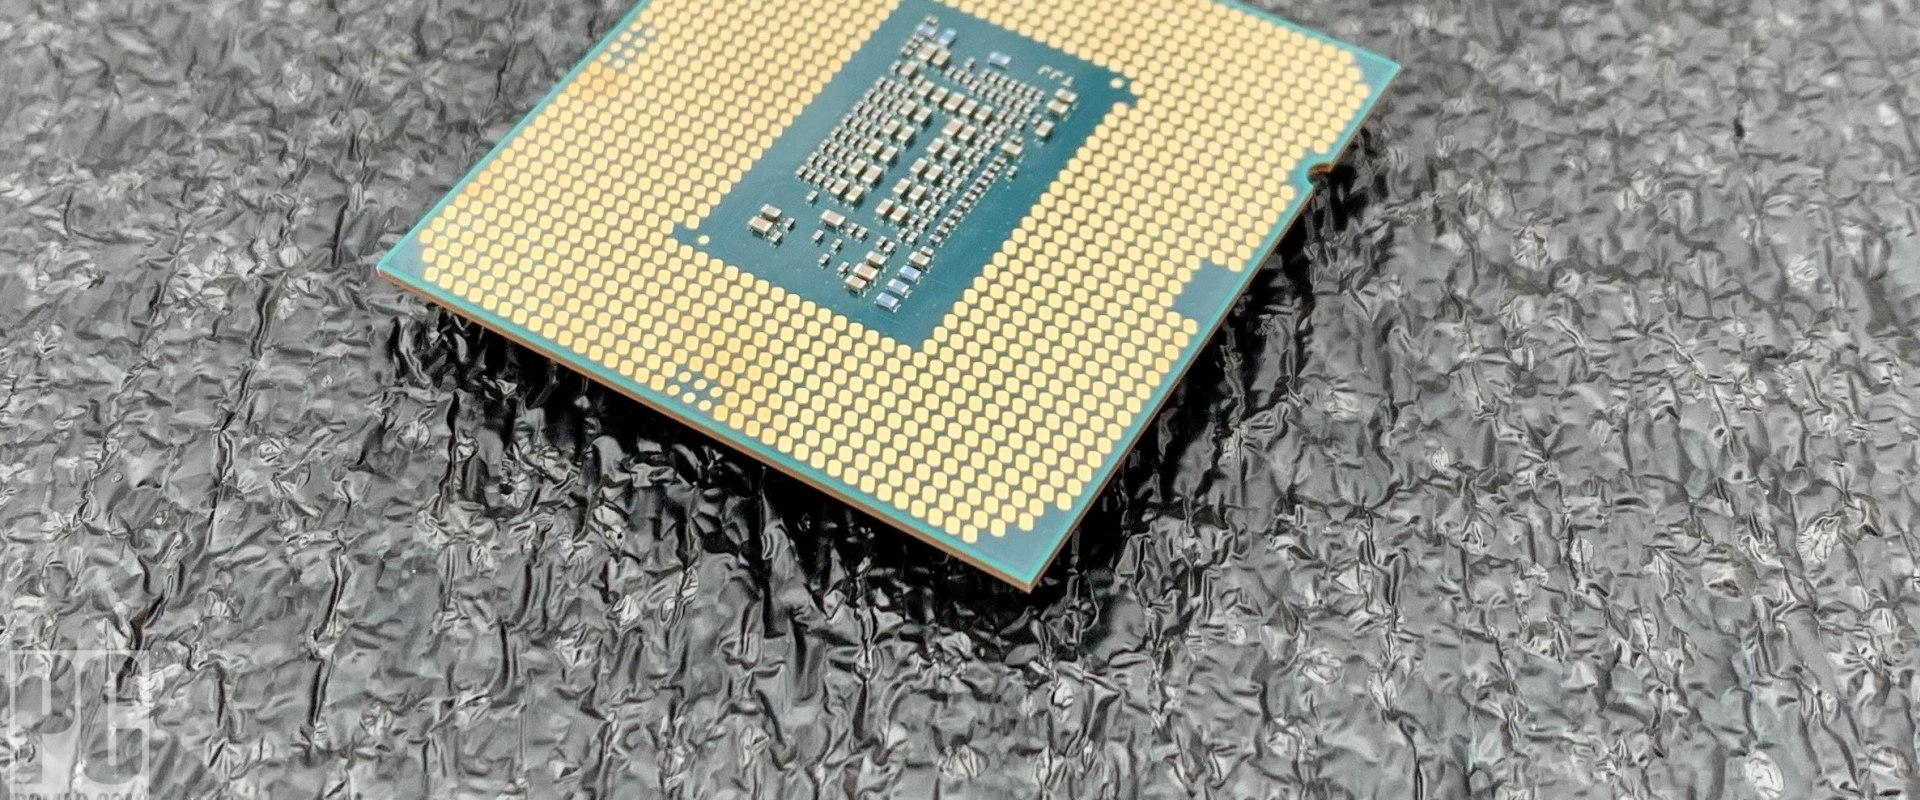 Intel Processor Specs - Desktop Computer and Processor Specs